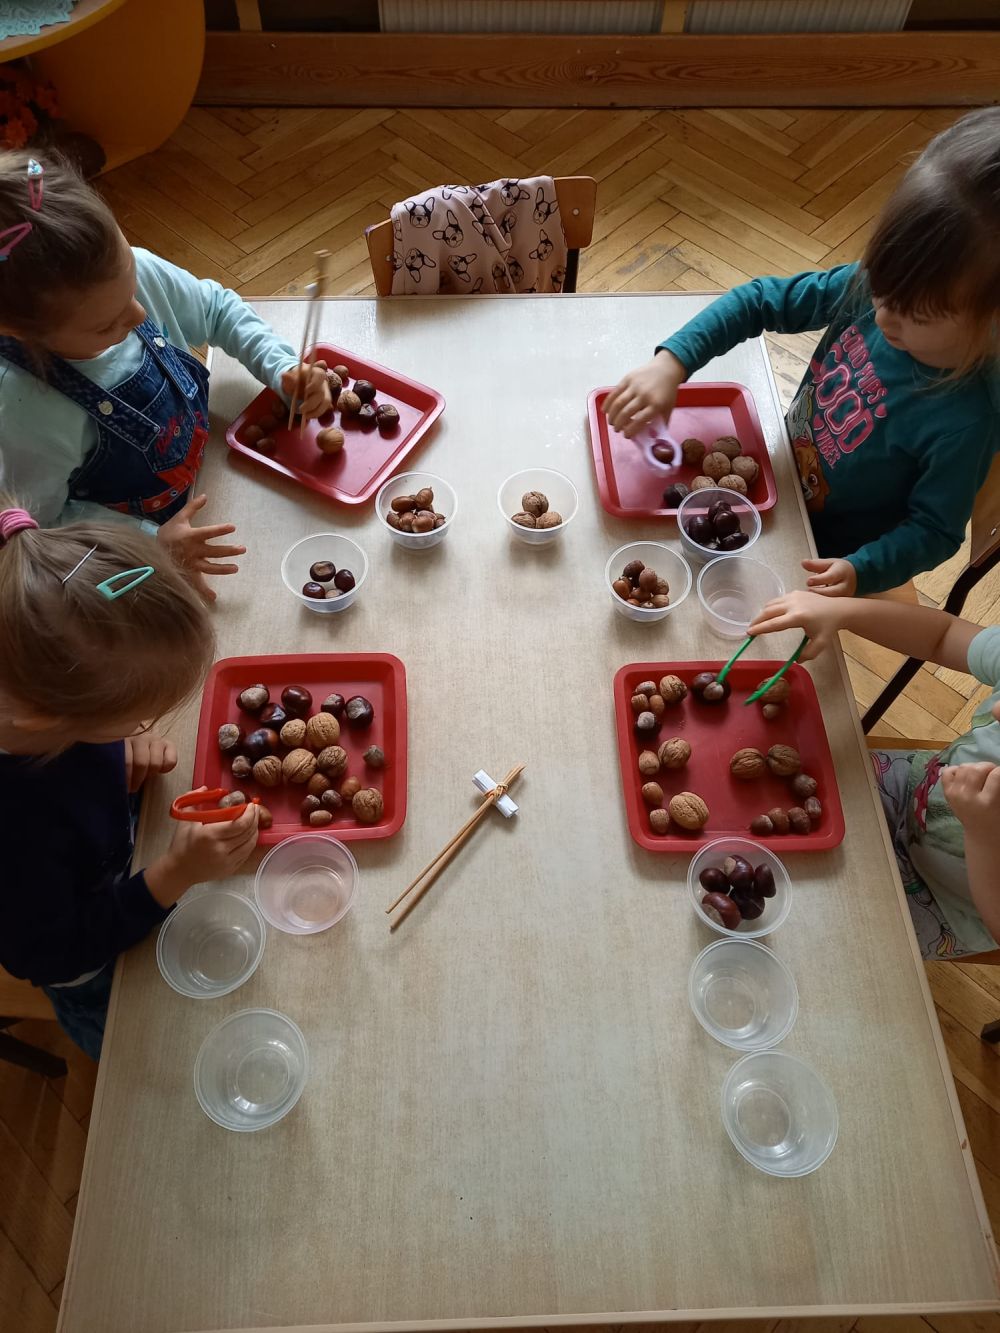 4 dziewczynki siedzą przy stoliku i segregują żołędzie, orzechy i kasztany przy pomocy szczypiec